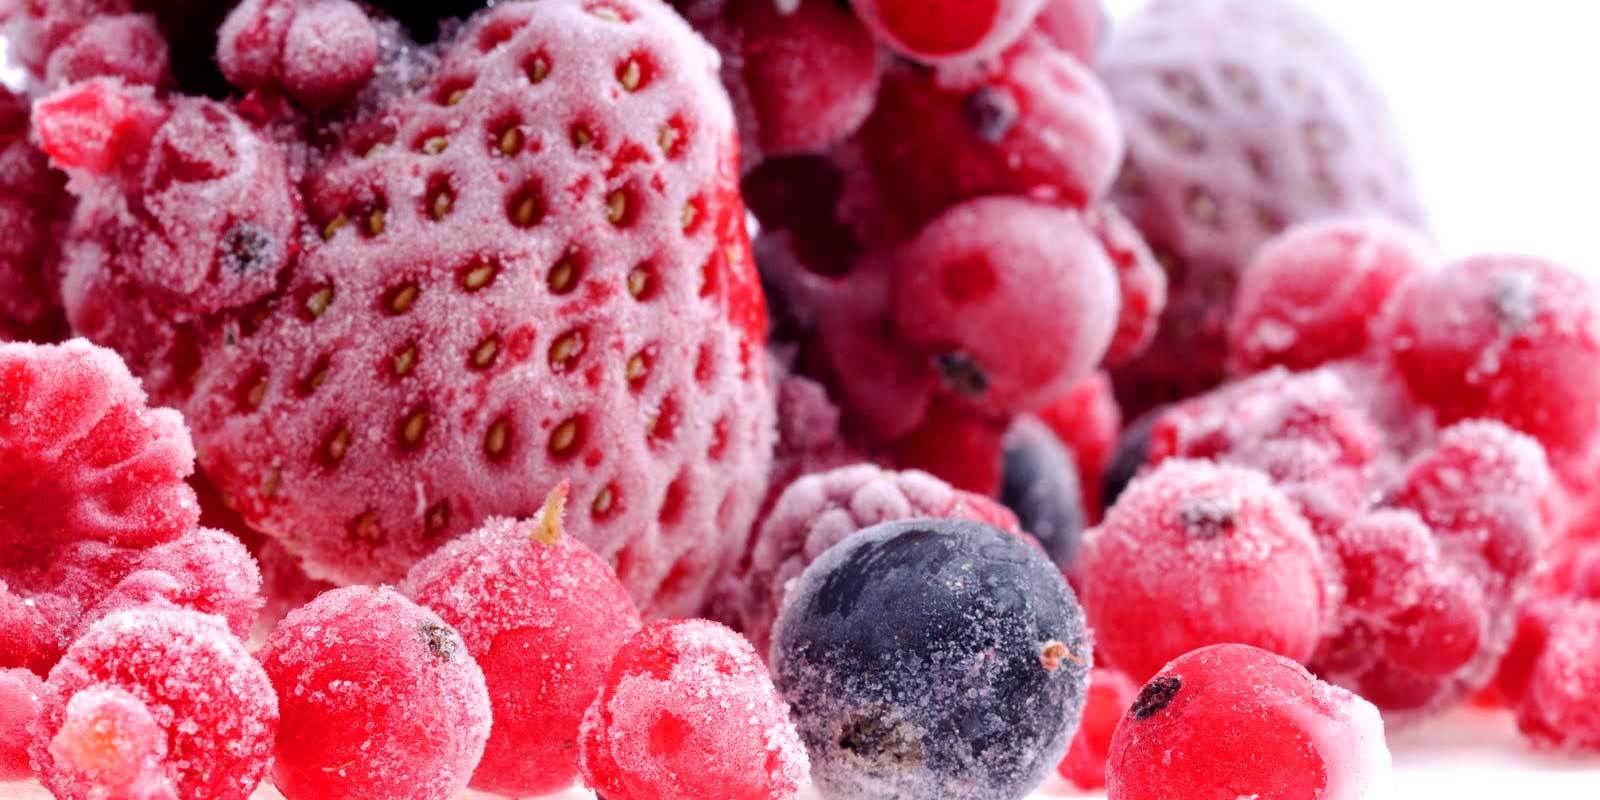 Zamrznjeno sadje in zelenjava Ne glede na to, ali gre za domac sladoled, lastno kreacijo marmelade ali slastno torto z zamrznjenim sadjem, imate prave kolicine na zalogi. Za spontano predelavo zamrznjenega sadja ni potrebna nobena carovnija.